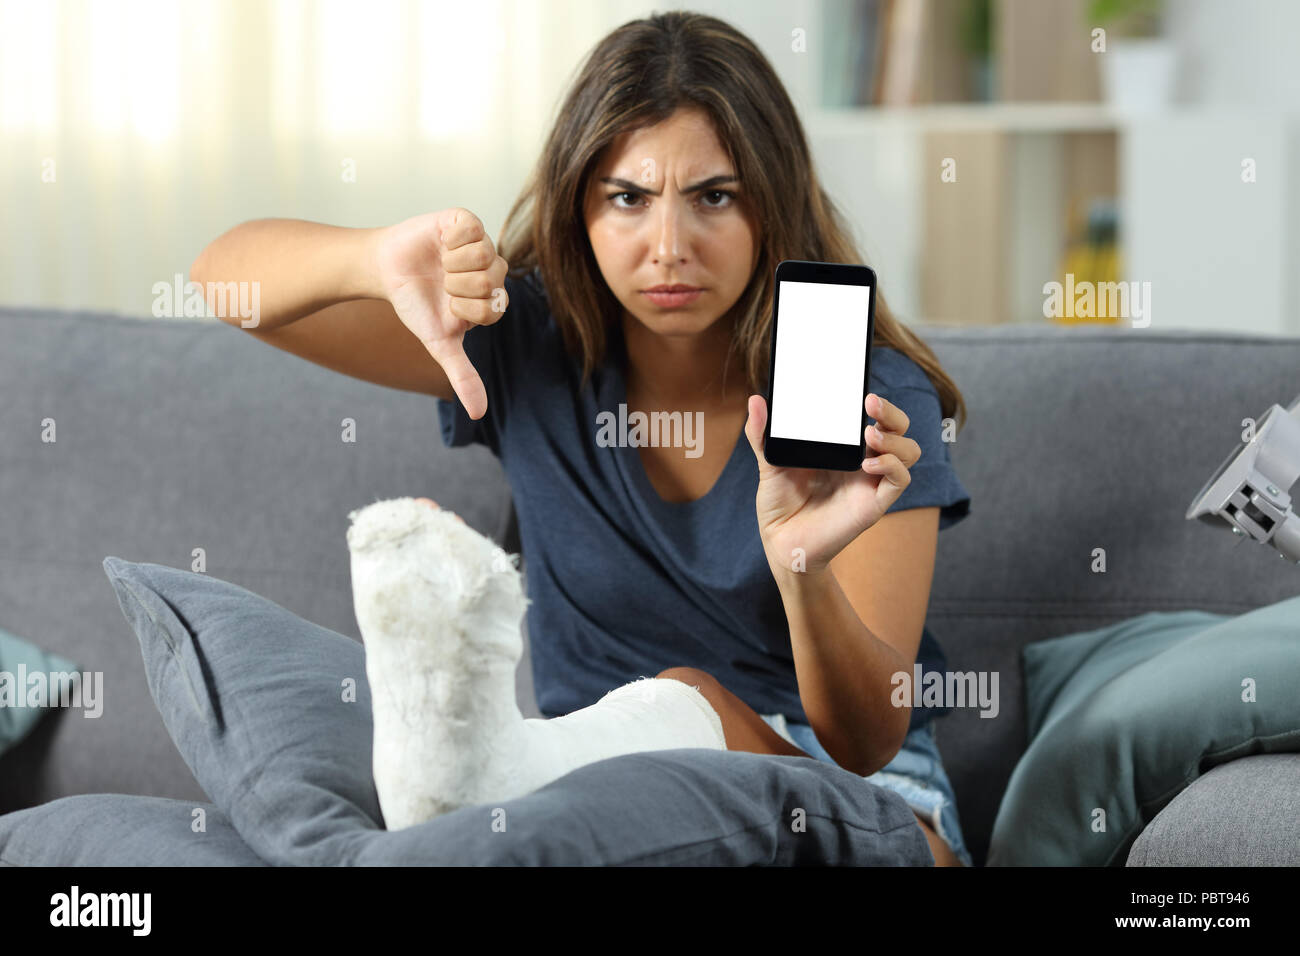 Все время сижу в телефоне. Женщина сидит в телефоне. Сидит за телефоном. Девушка сидит на диване. Злая девушка с телефоном.